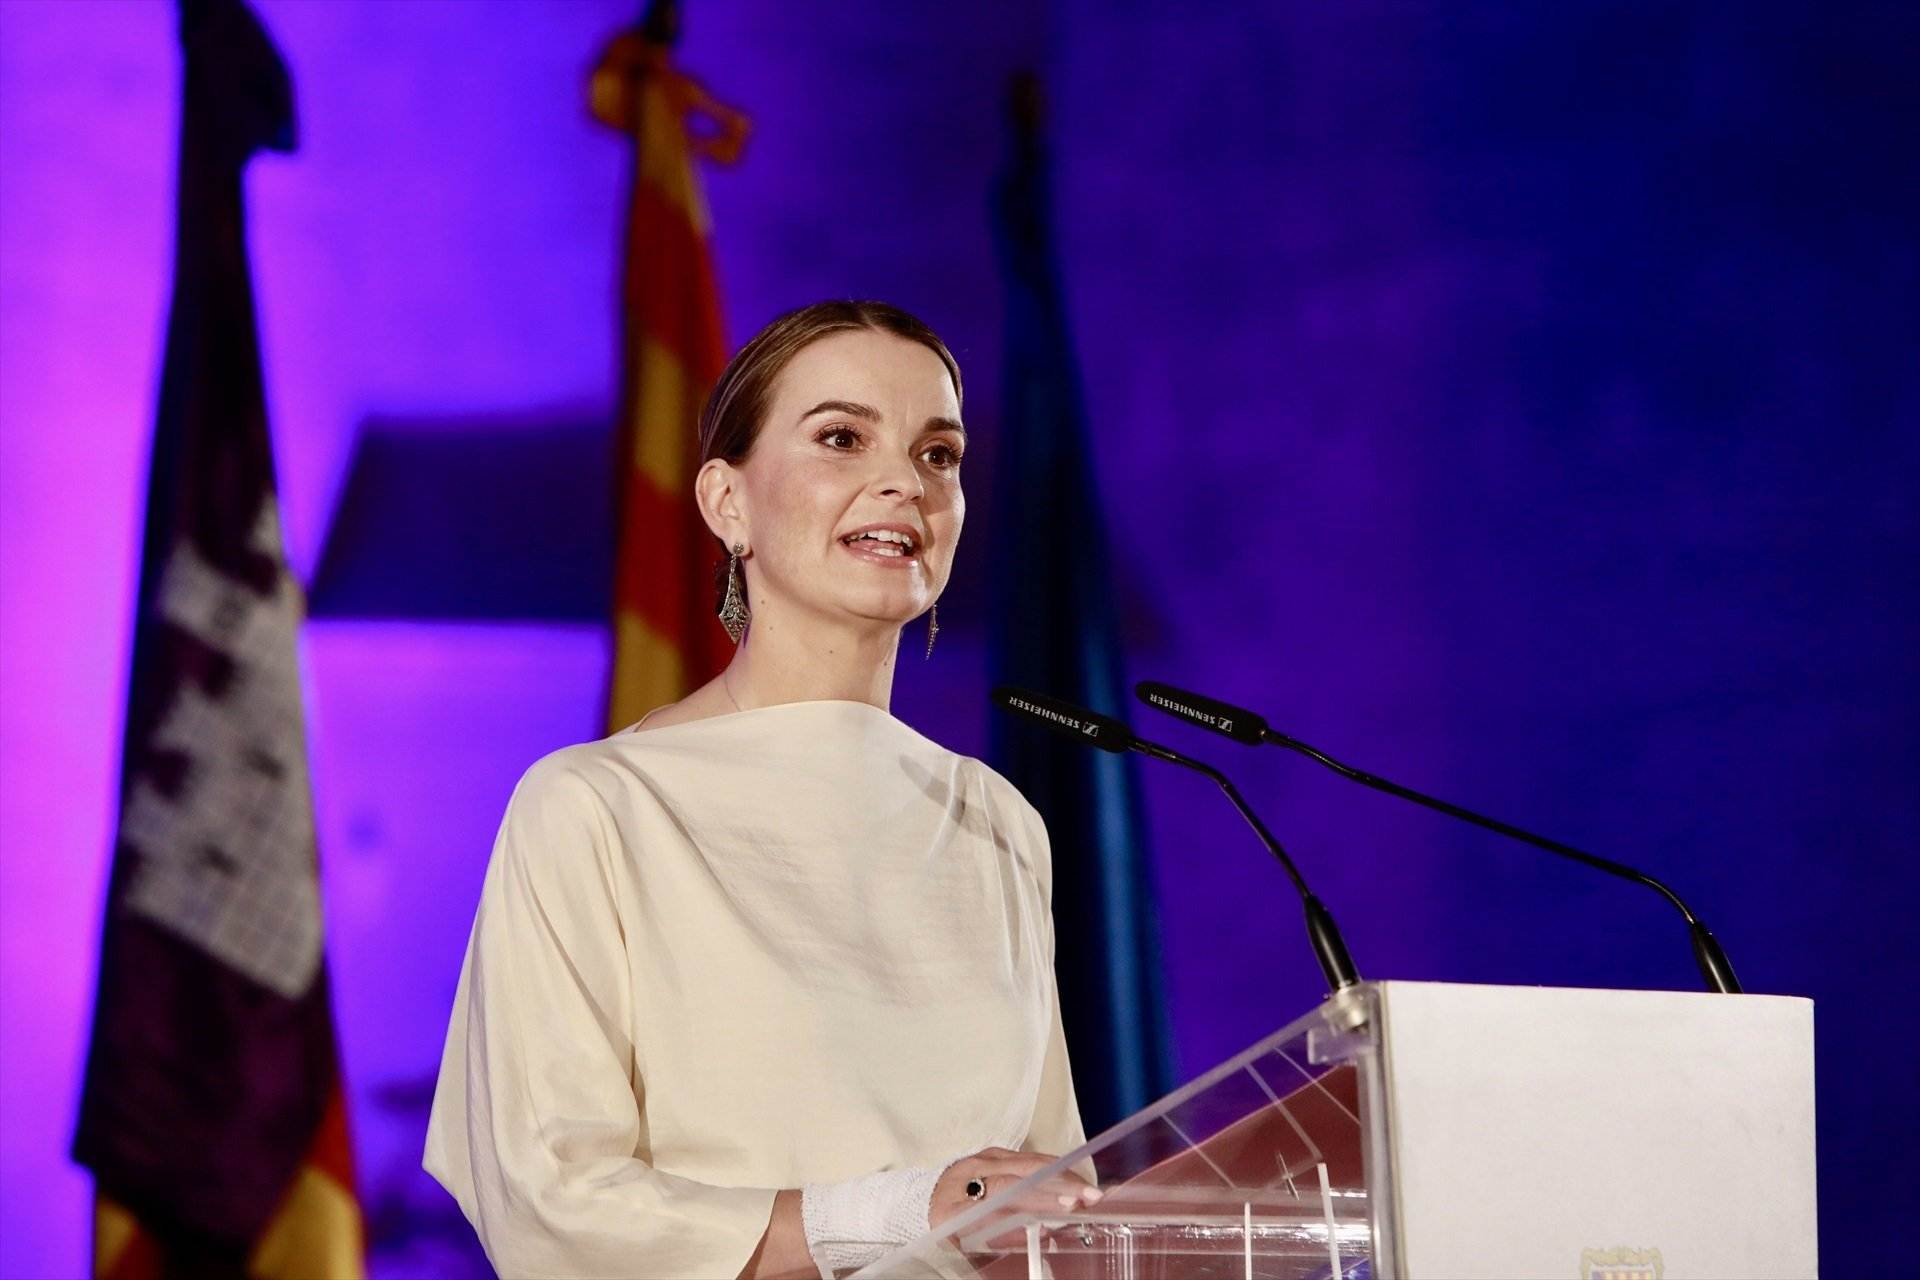 La presidenta balear defiende la eliminación del requisito del catalán porque "la salud es lo primero"